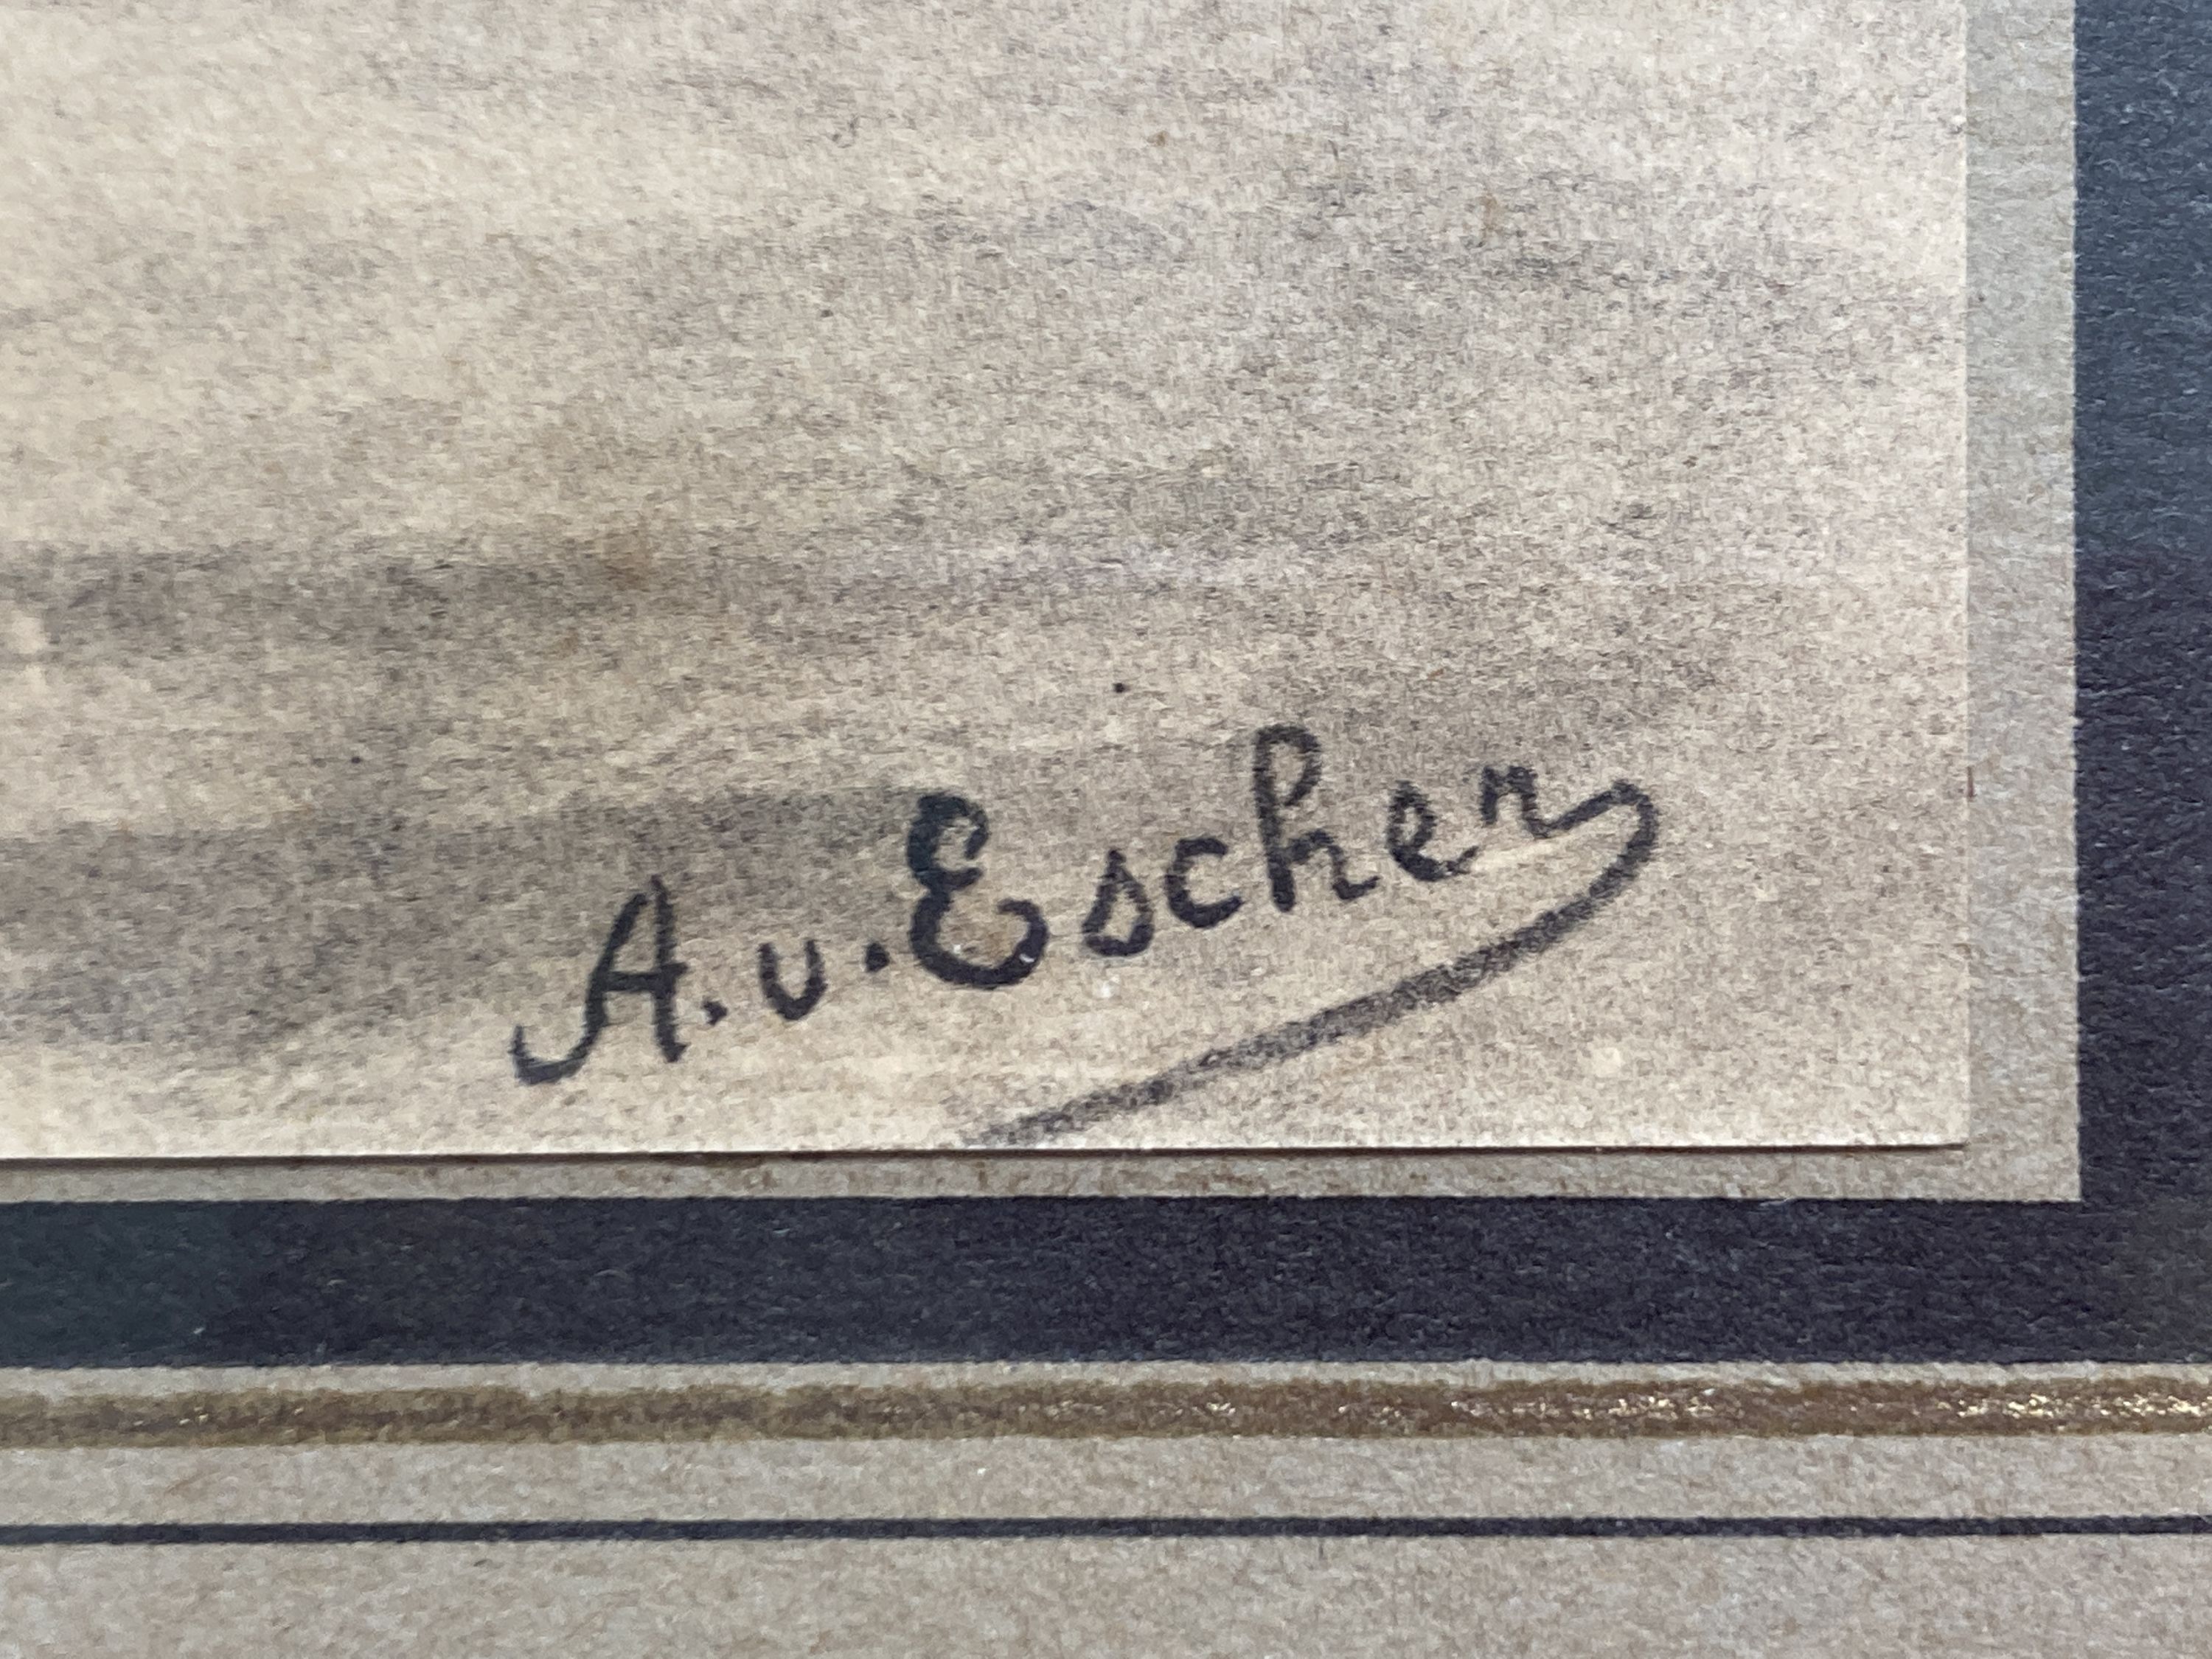 After Albert von Escher (Swiss 1839-1905). Basel-Stadt, a set of four framed military prints, 17 x 24cm